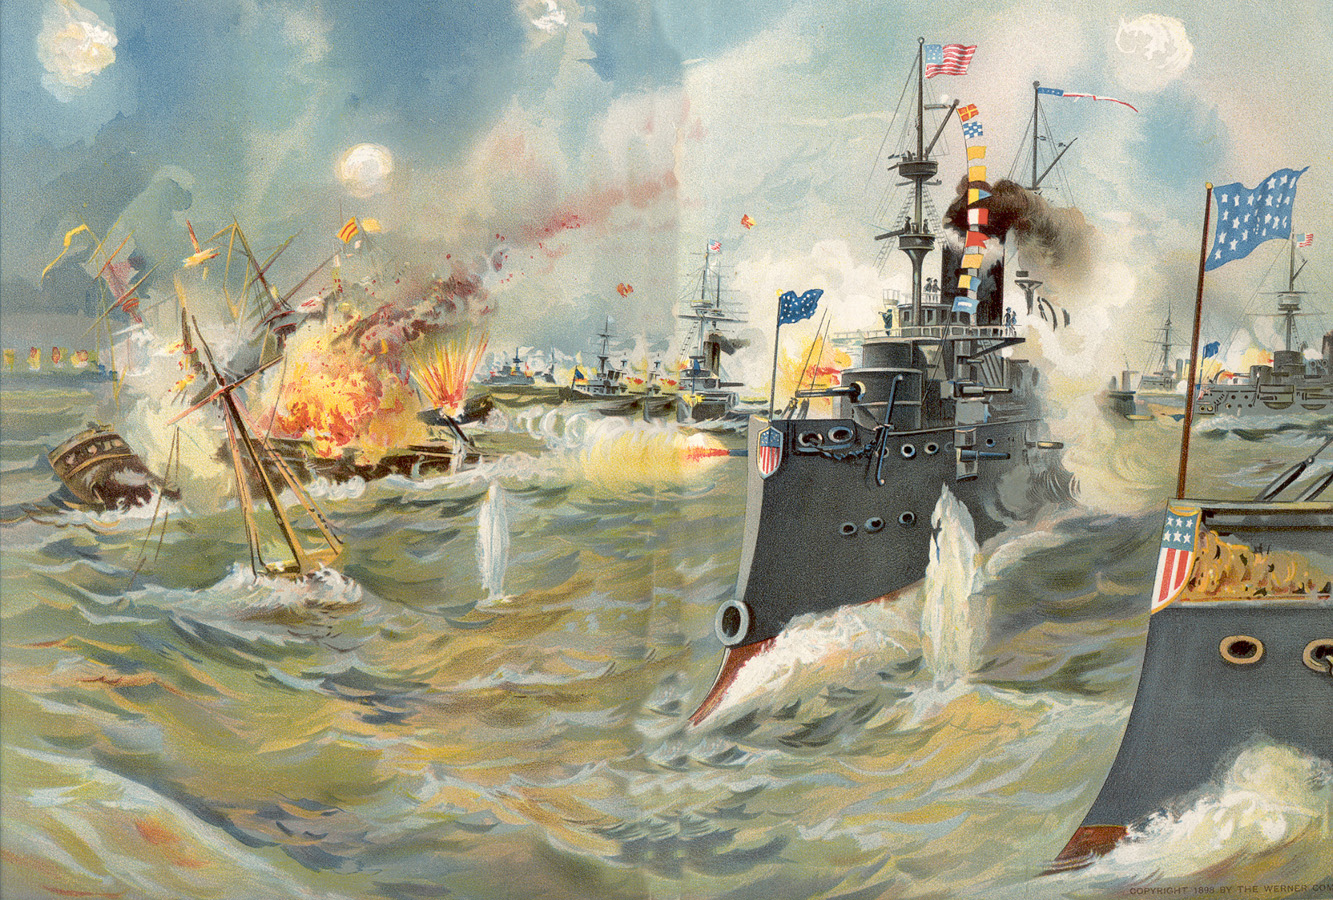 Hải chiến vịnh Manila 1898: Cuộc thảm sát 380 người - Ảnh 1.